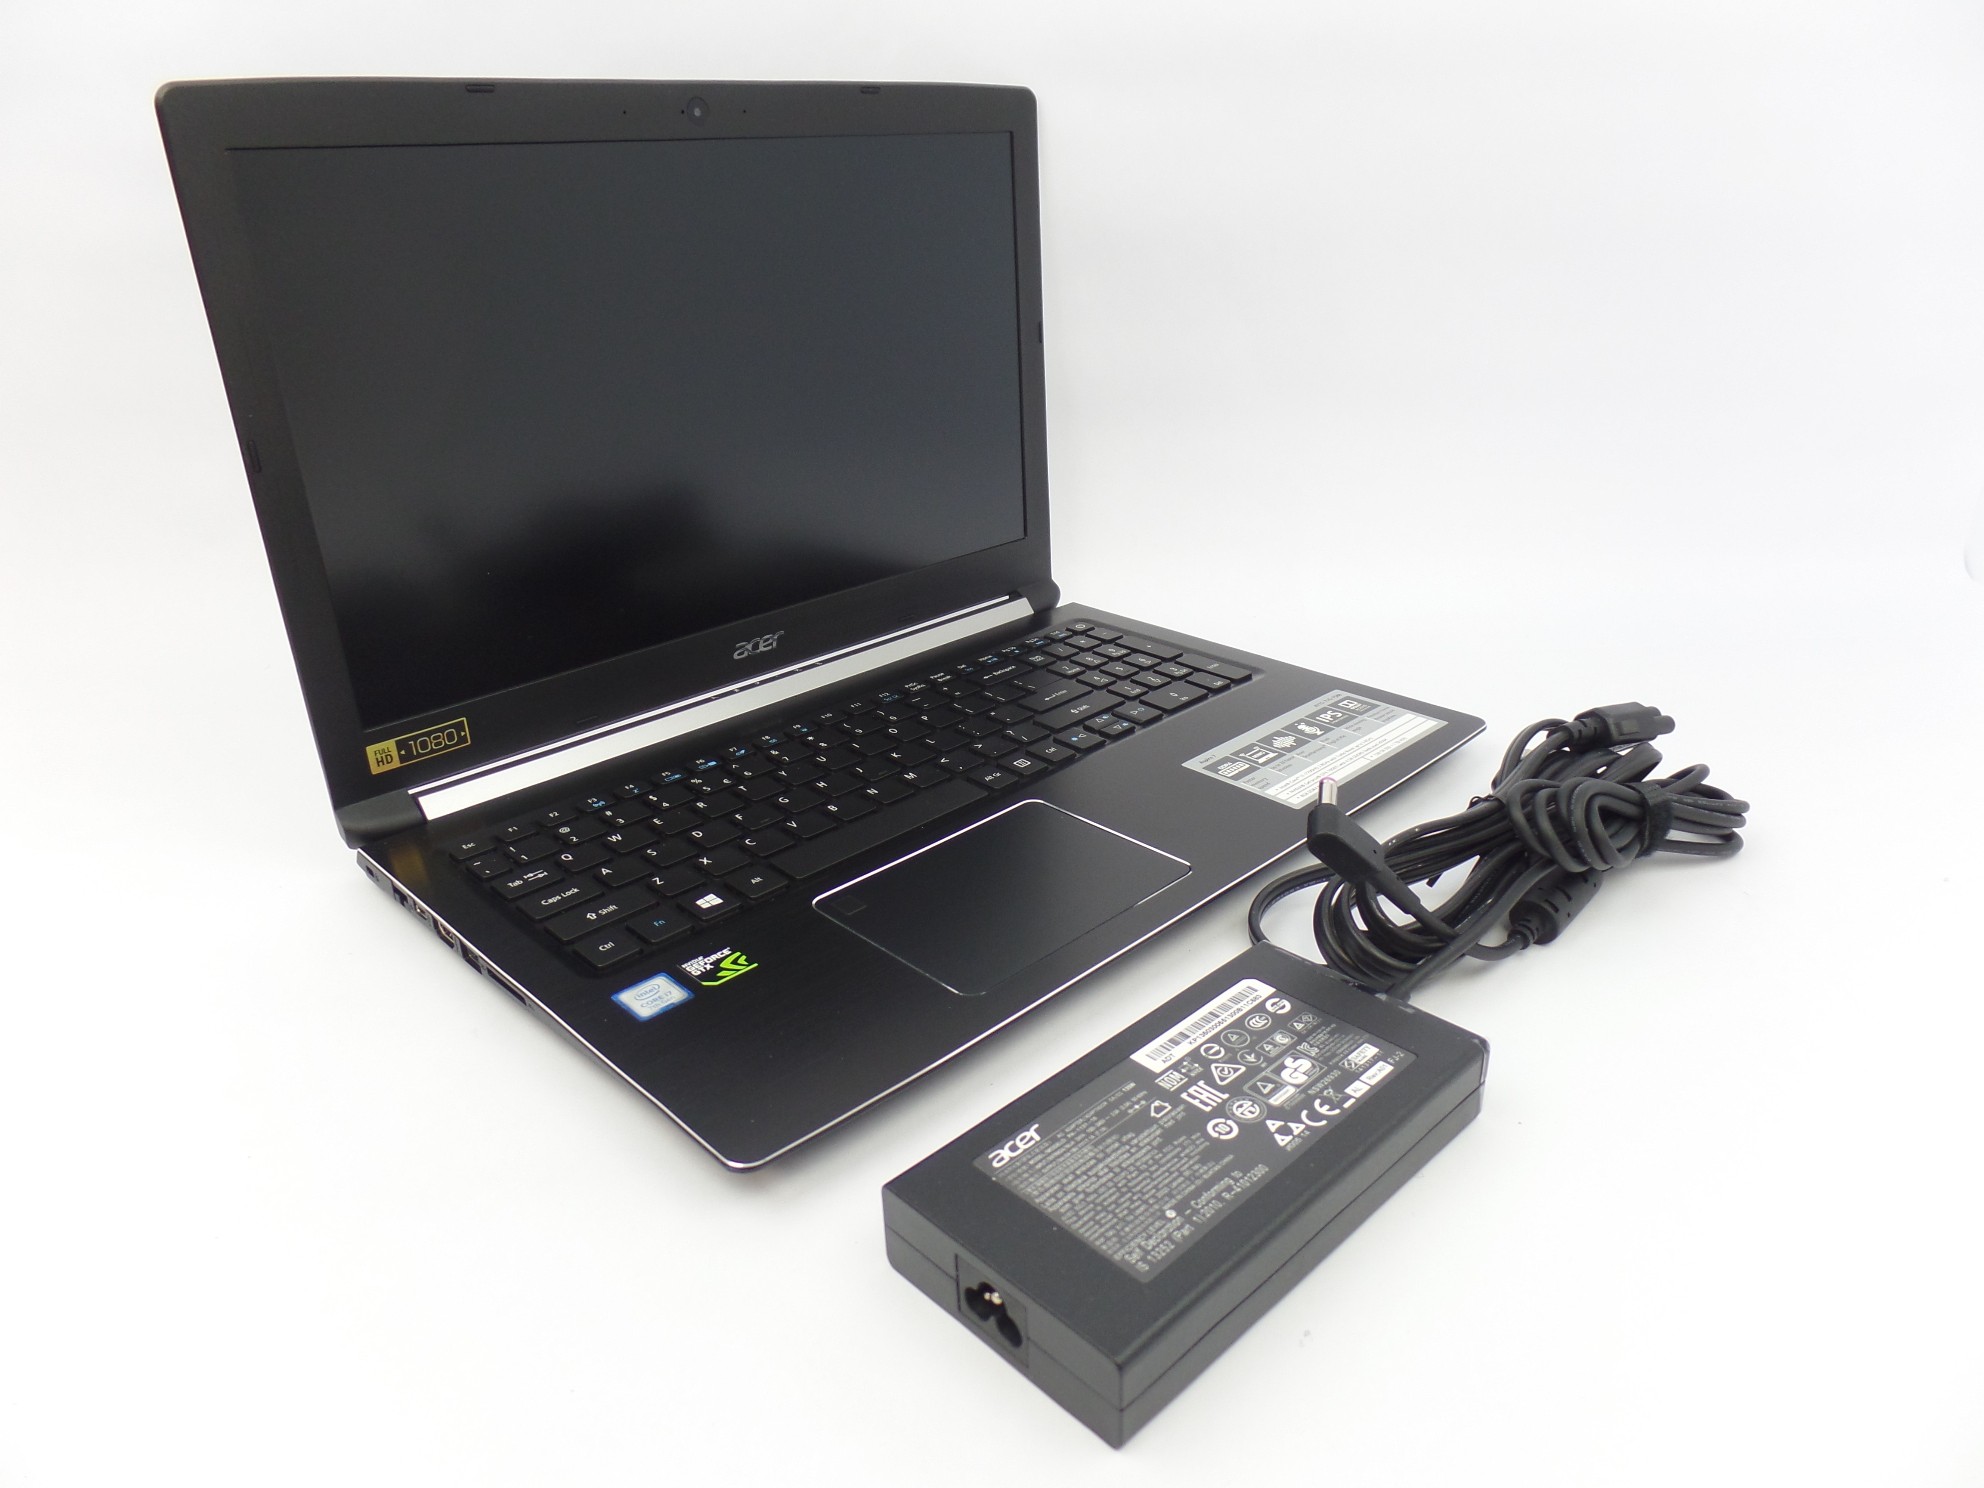 Acer Aspire A715-71G-7588 15.6" FHD i7-7700HQ 2.8GHz 8GB 1TB+128GB 1050Ti W10H